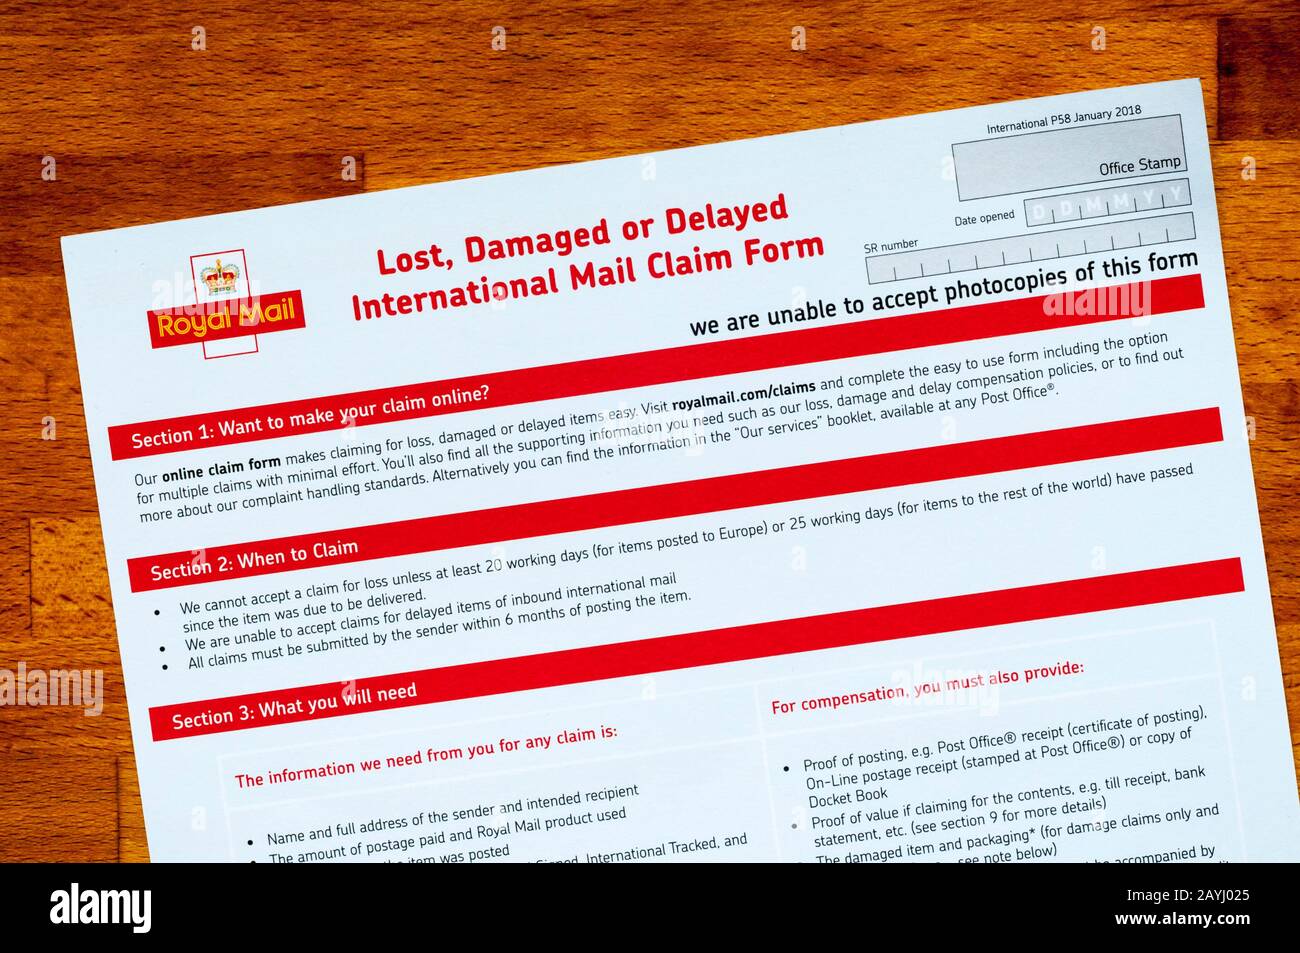 Ein Antragsformular für Royal Mail Mit Verlust, Beschädigung oder Verspätung von International Mail. Stockfoto